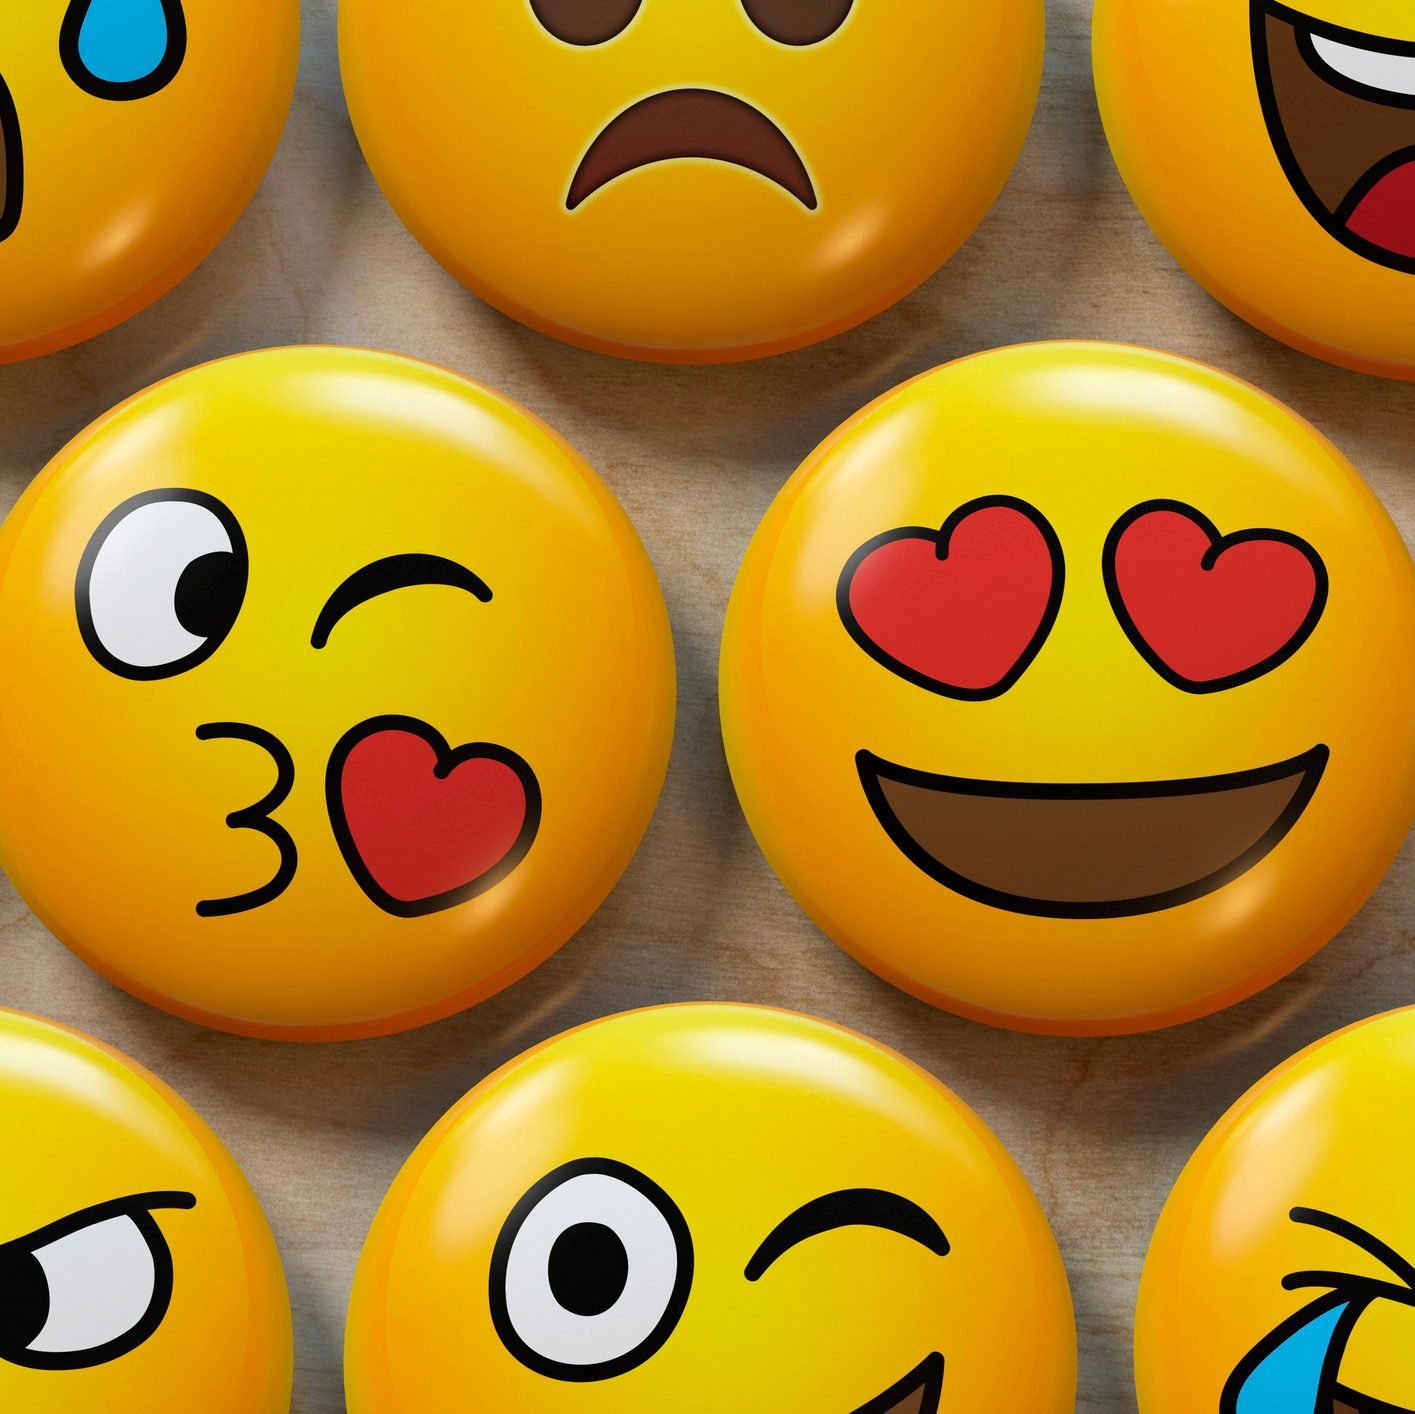 Two emoji badges in love